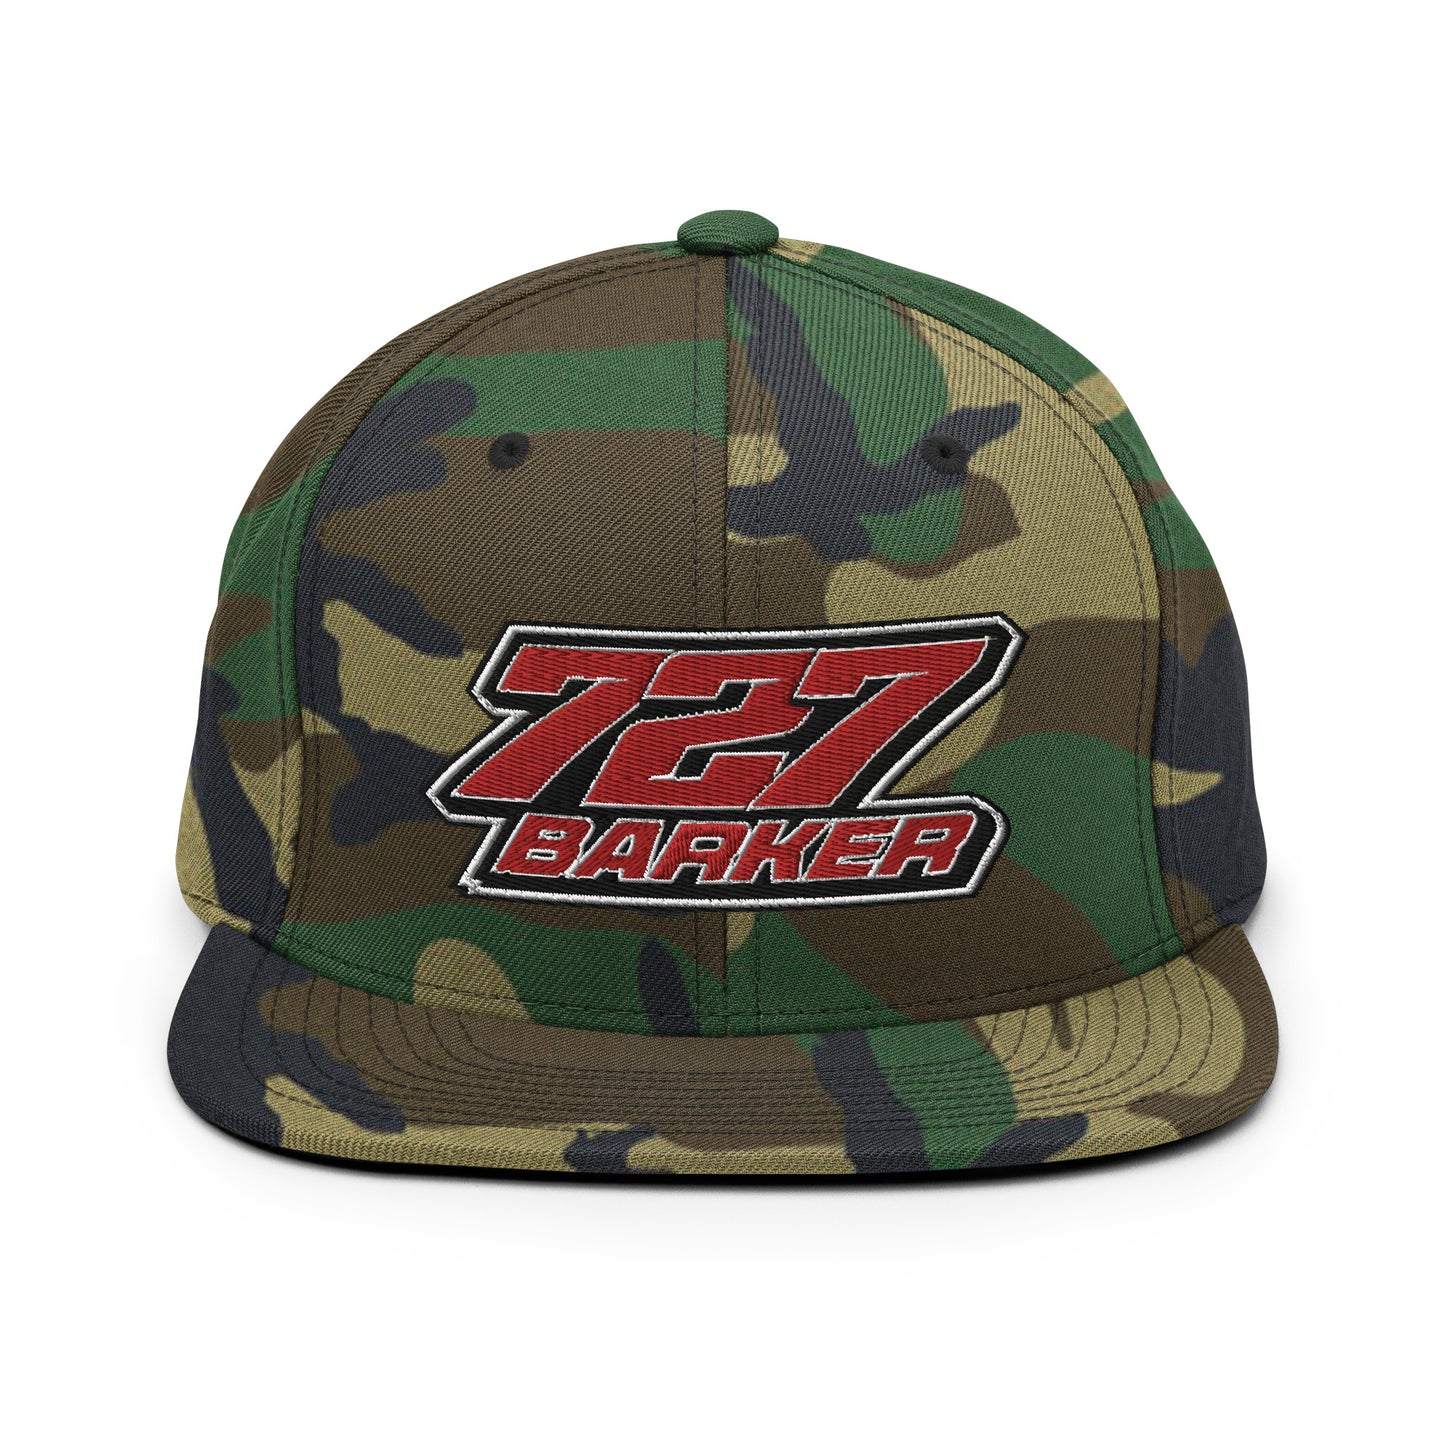 Brayson Barker 727 Snapback Hat